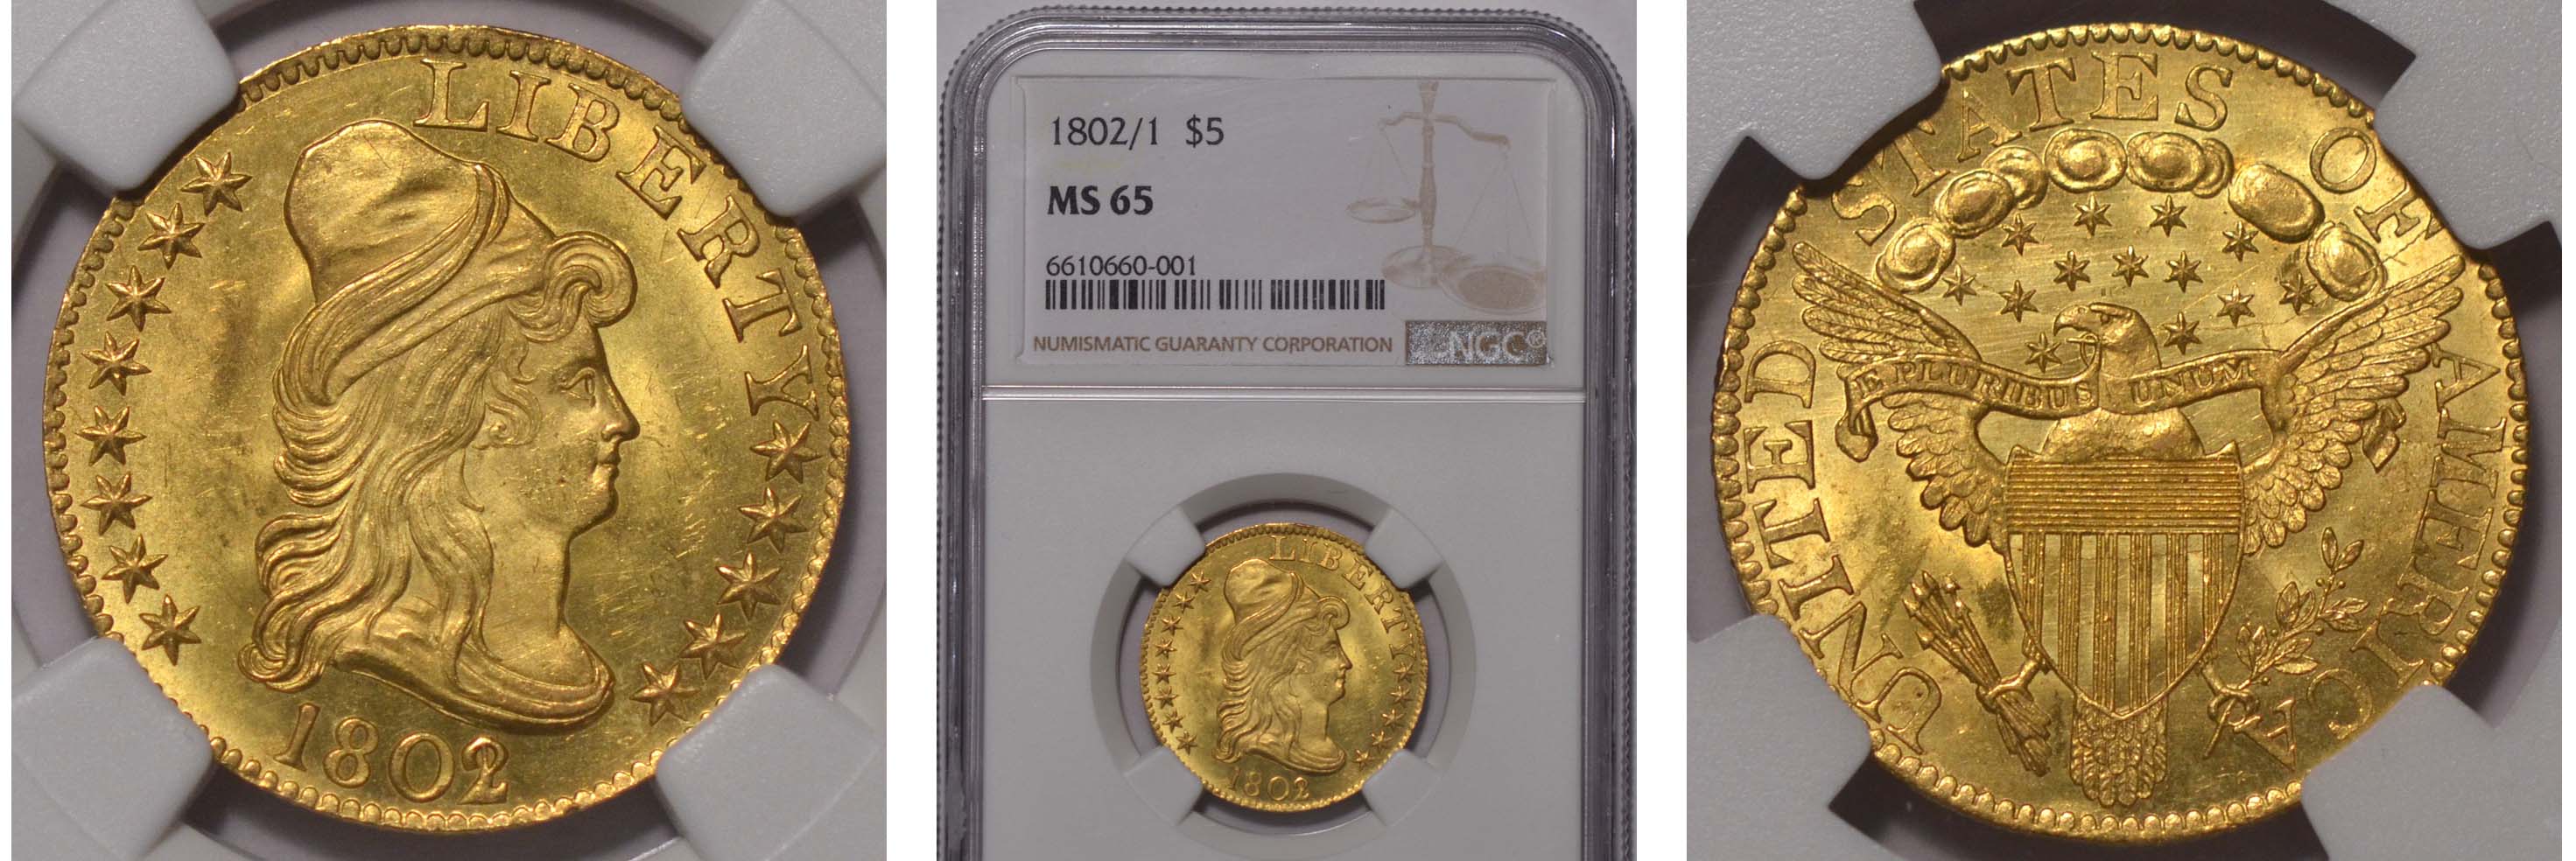 1802/1 Gold Half Eagle $5 NGC MS65